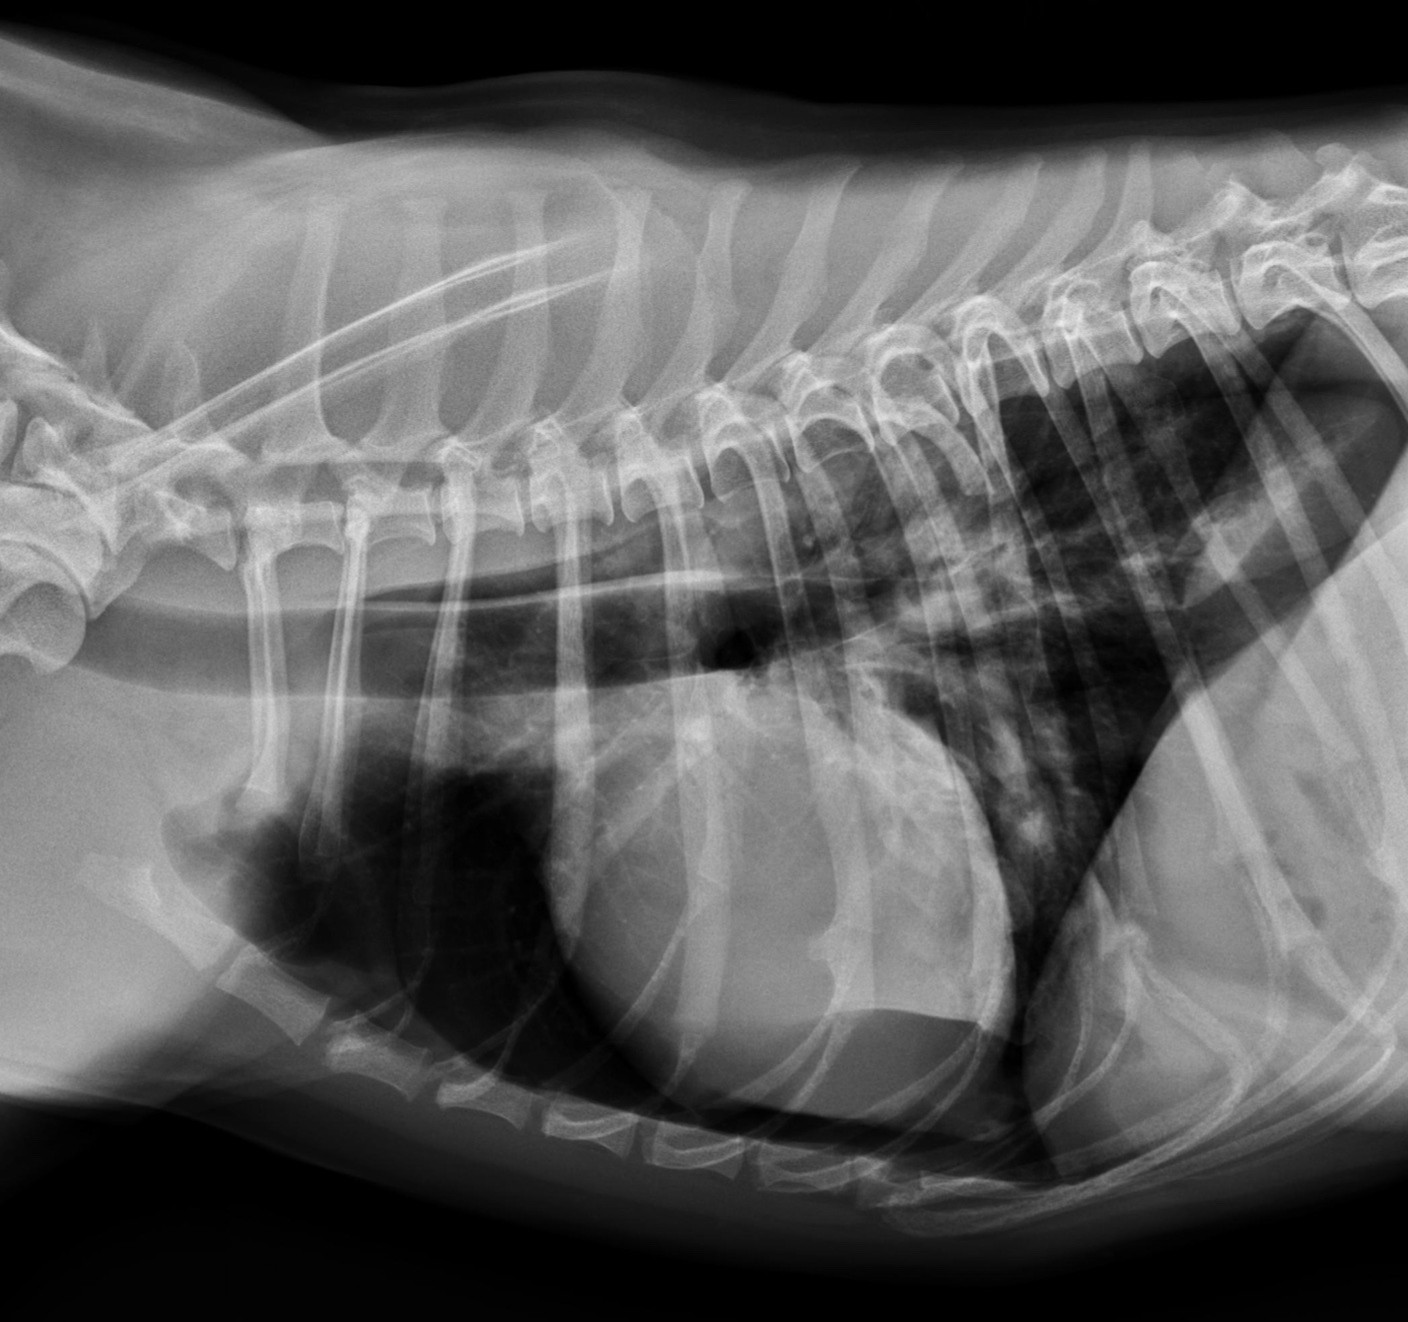 Abb. 4: Laterolaterale Röntgenaufnahme des Thorax nach dem chirurgischen Eingriff